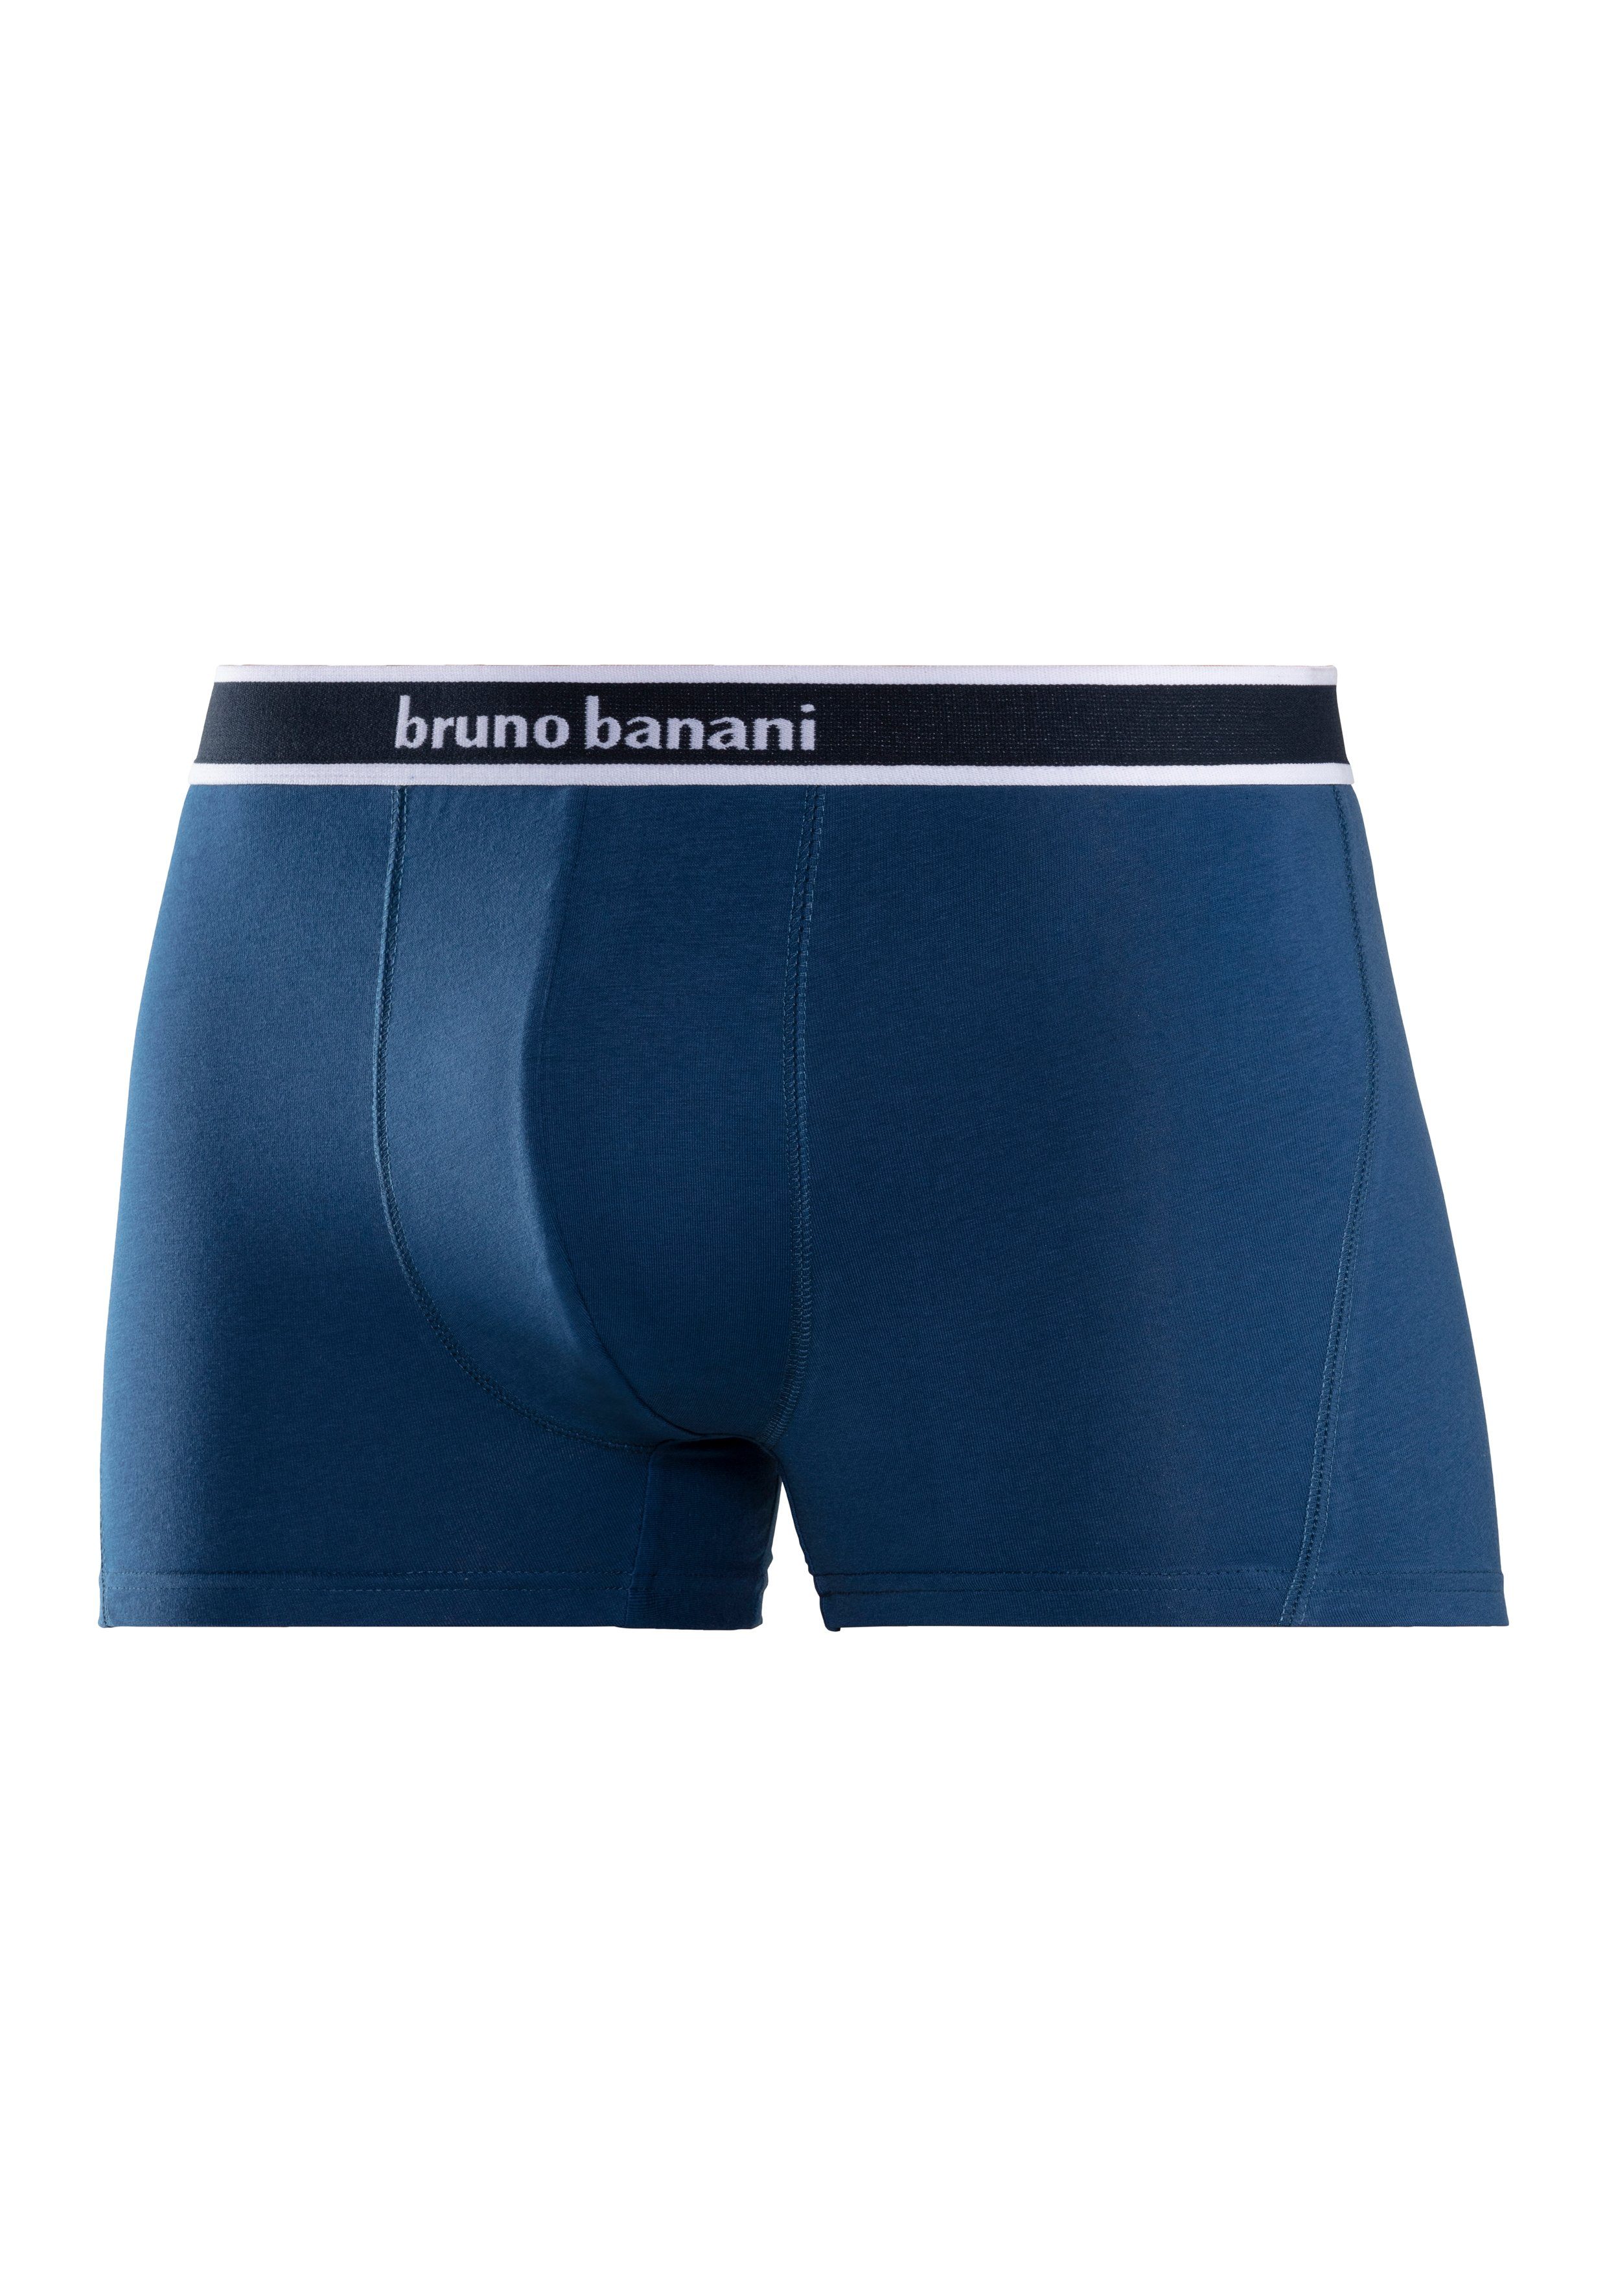 Bruno Boxer (Packung, lila, navy türkis, 4-St) Banani blau,